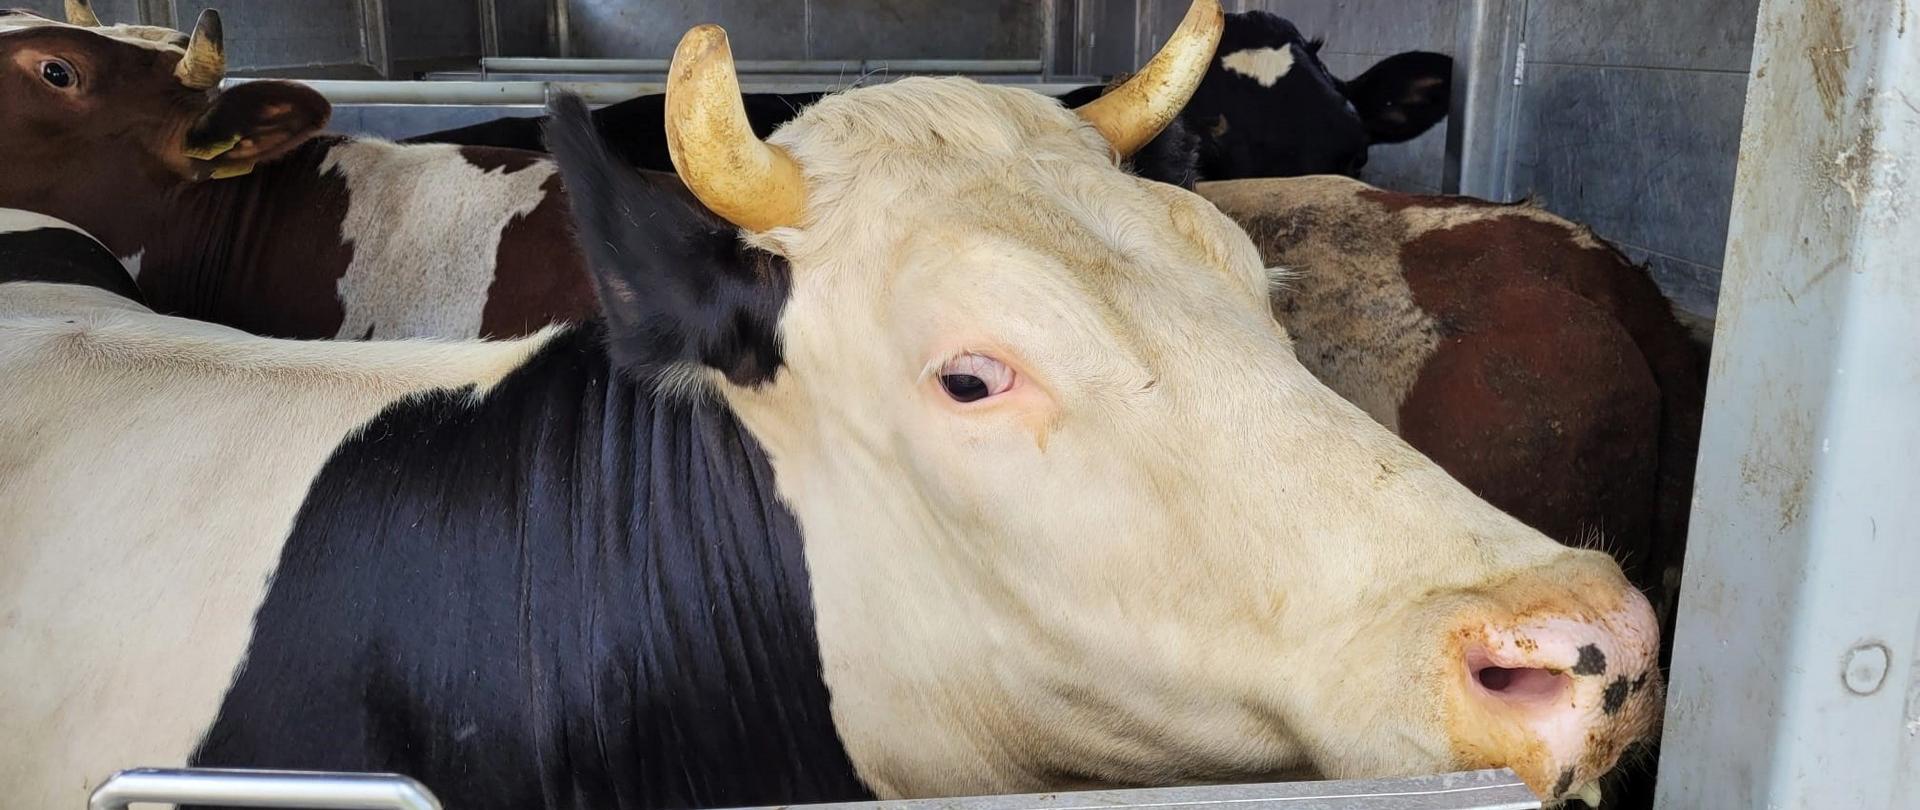 Jedna z krów nie miała wymaganego kolczyka świadczącego o ujęciu jej w rejestrze hodowcy zwierząt